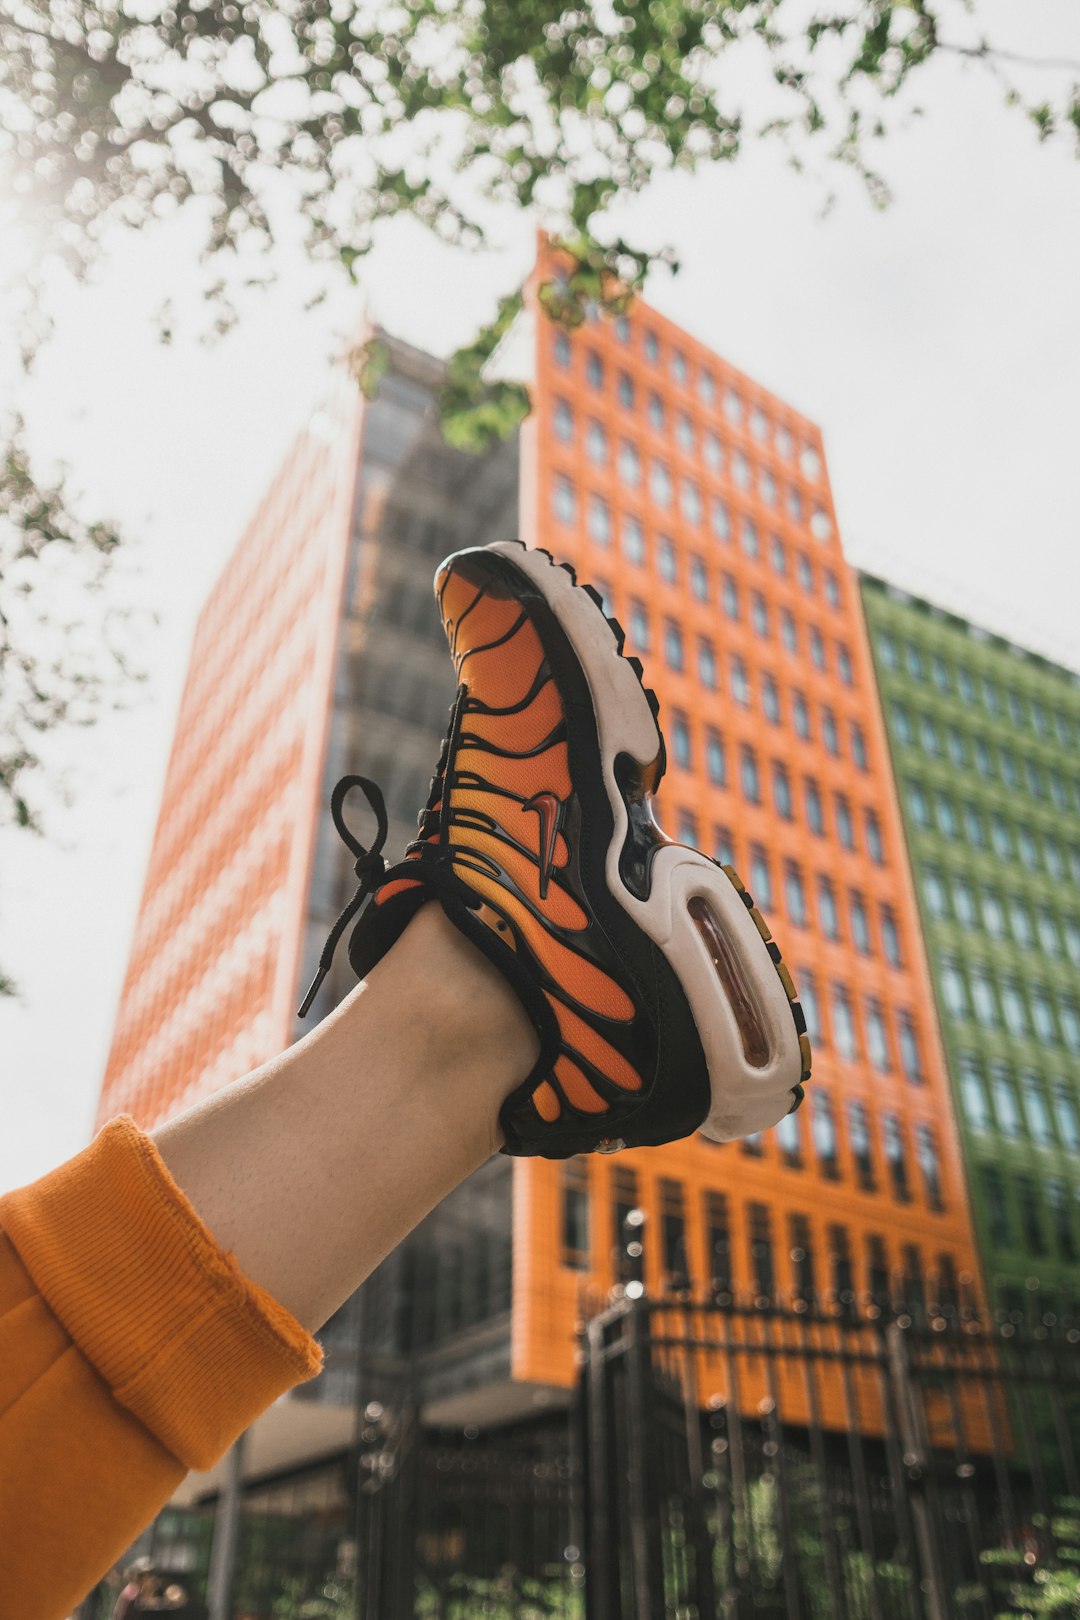 black and orange Nike basketball shoe close-up photography